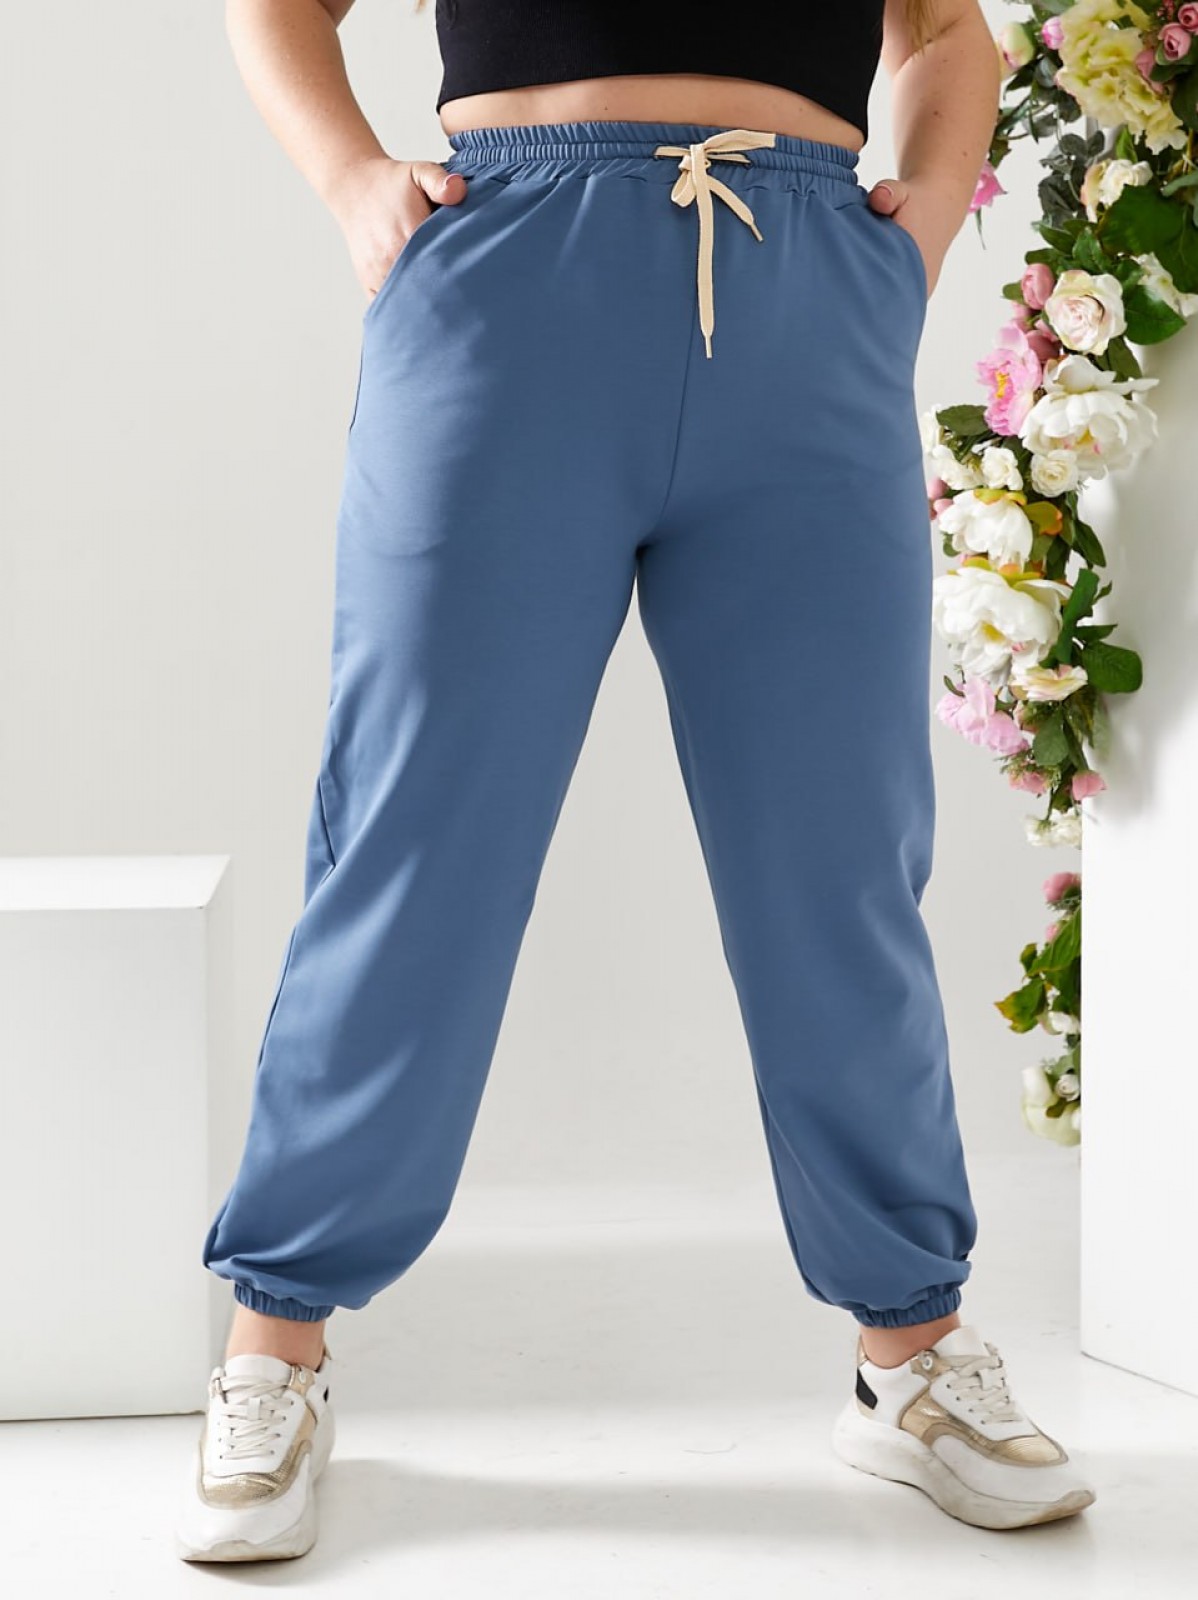 Жіночі спортивні штани двонитка джинсового кольору р.52 406162